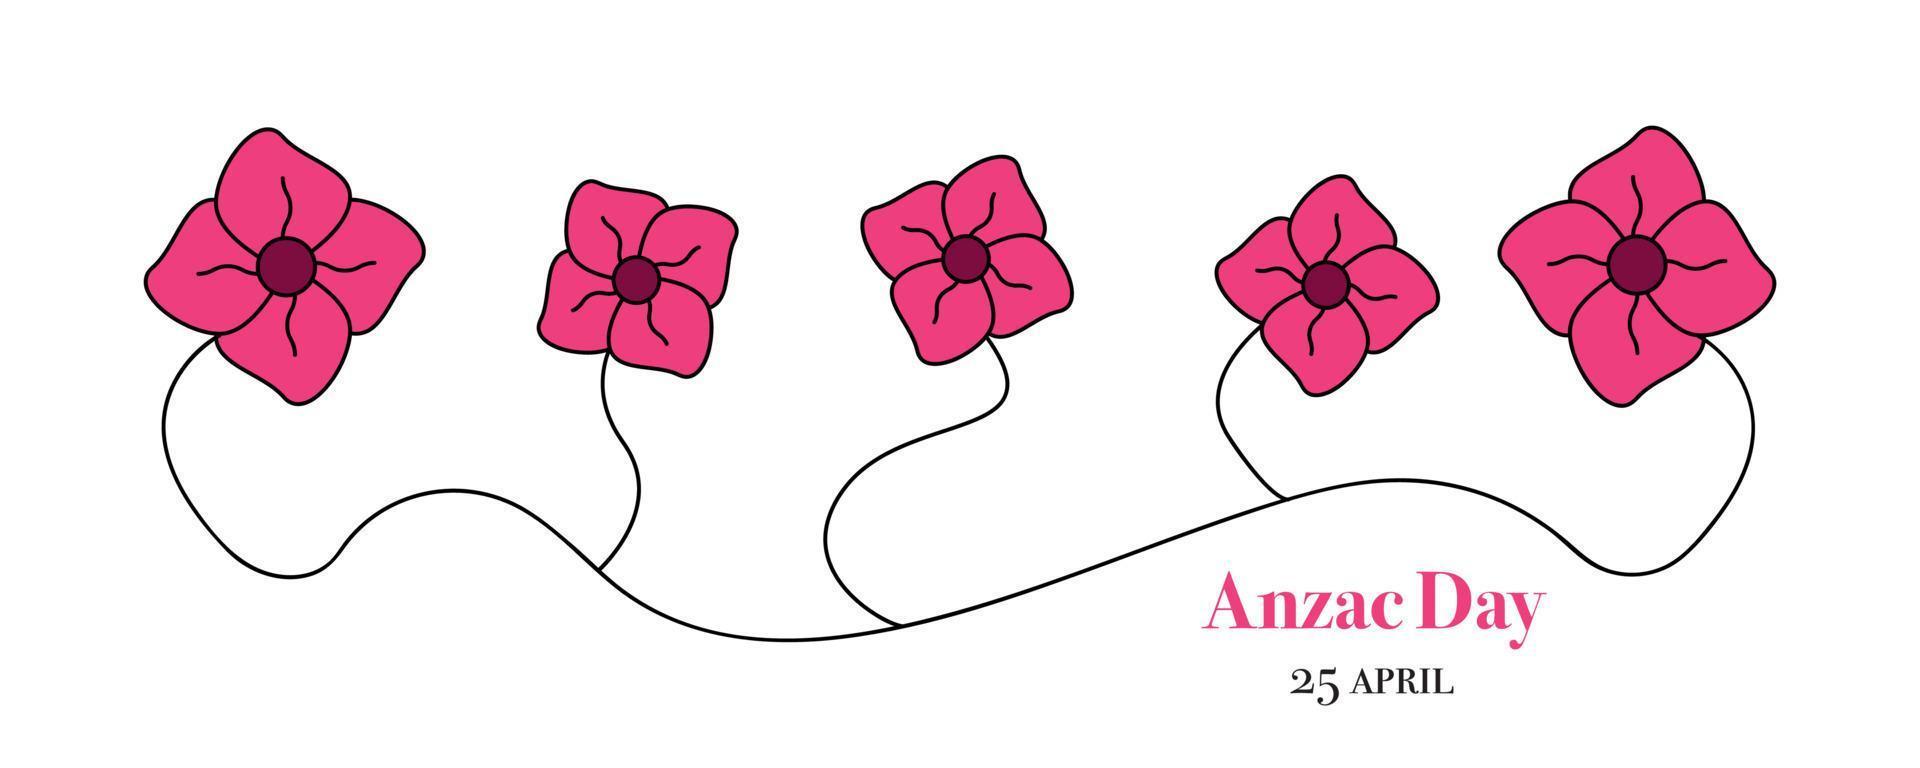 design della bandiera del giorno anzac. immagine unitaria dei fiori di papavero. illustrazione vettoriale di fiori di papavero luminosi.